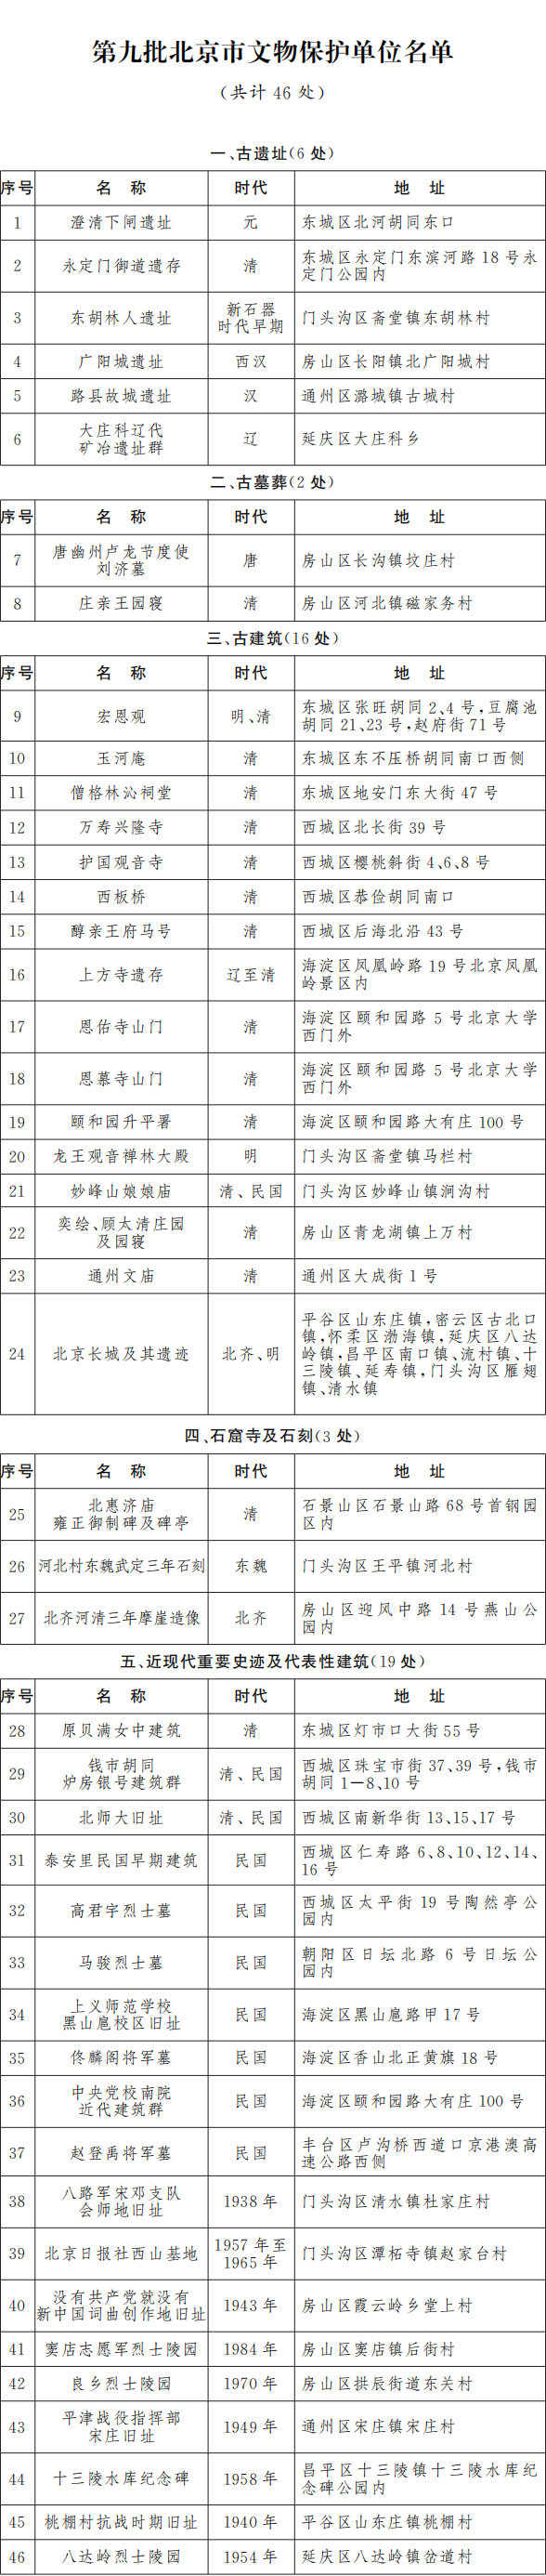 第九批北京市文物保護單位名單